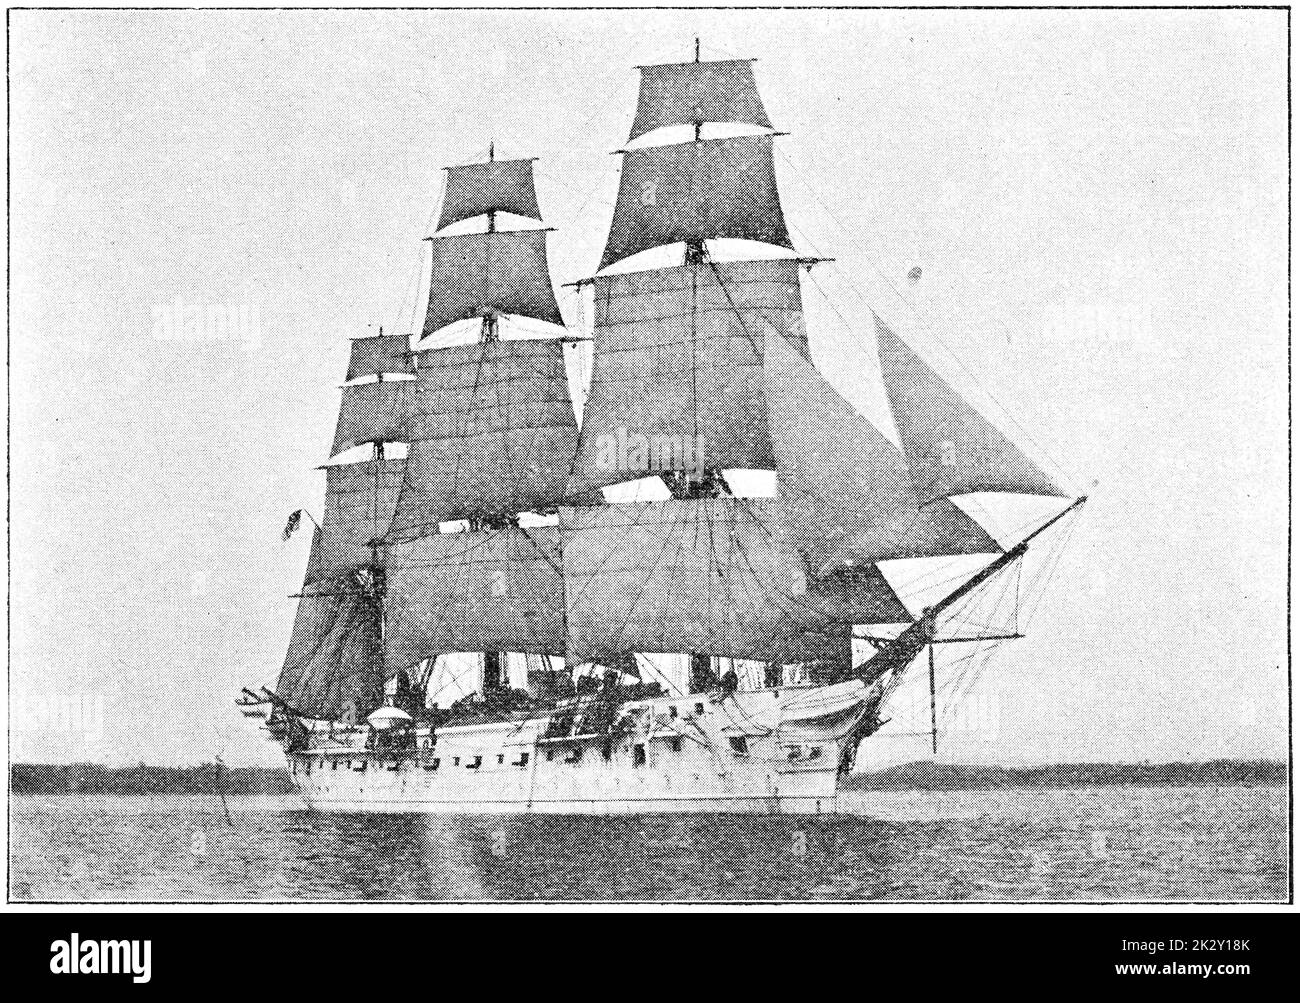 SMS Gneisenau (1879) - una corvette di classe Bismarck costruita per la Marina Imperiale tedesca. Illustrazione del 19 ° secolo. Germania. Sfondo bianco. Foto Stock